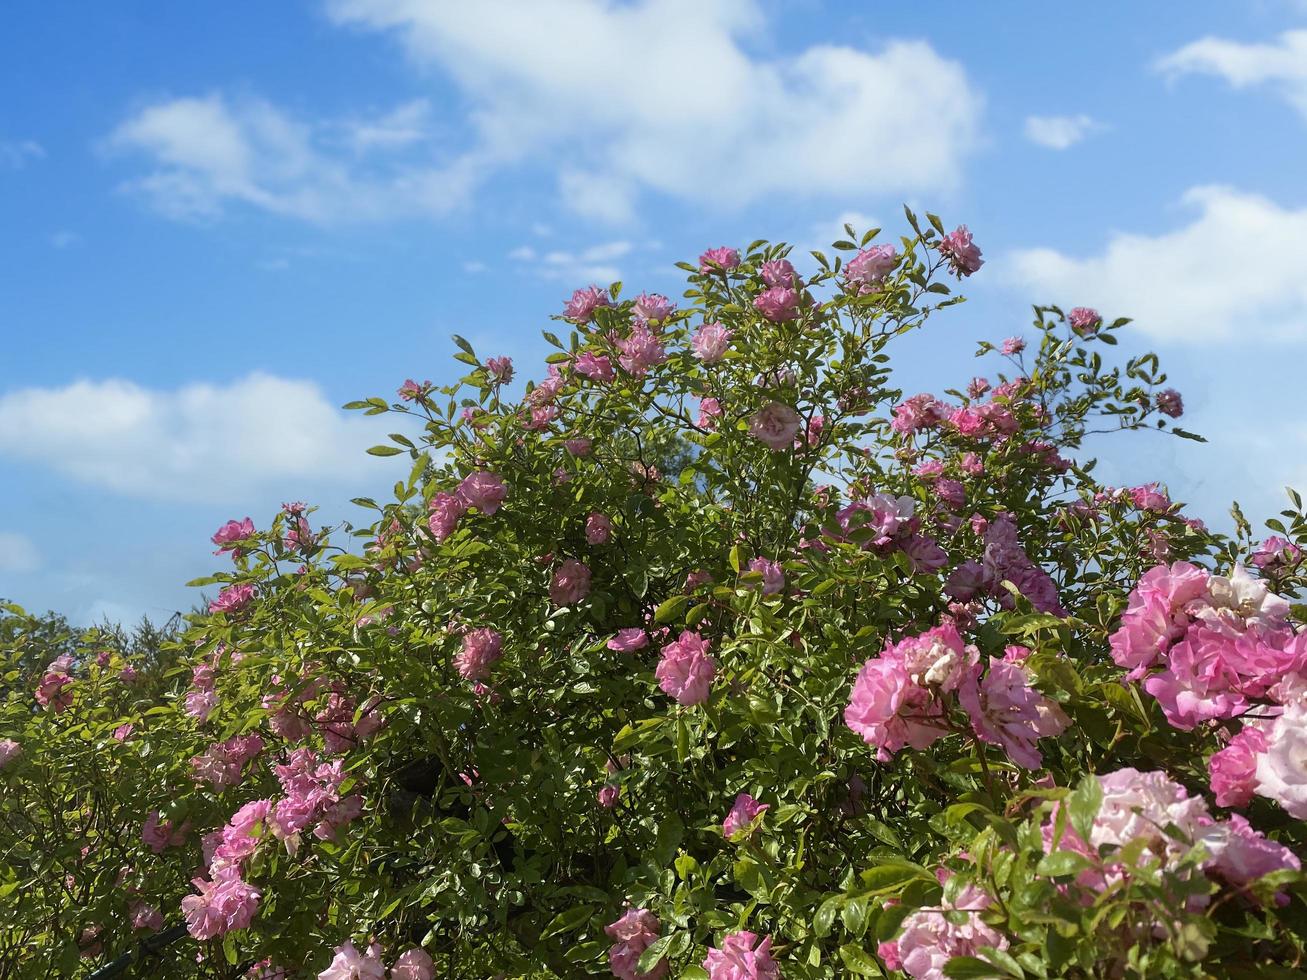 paysage avec un arbuste de roses roses sur fond de ciel bleu photo